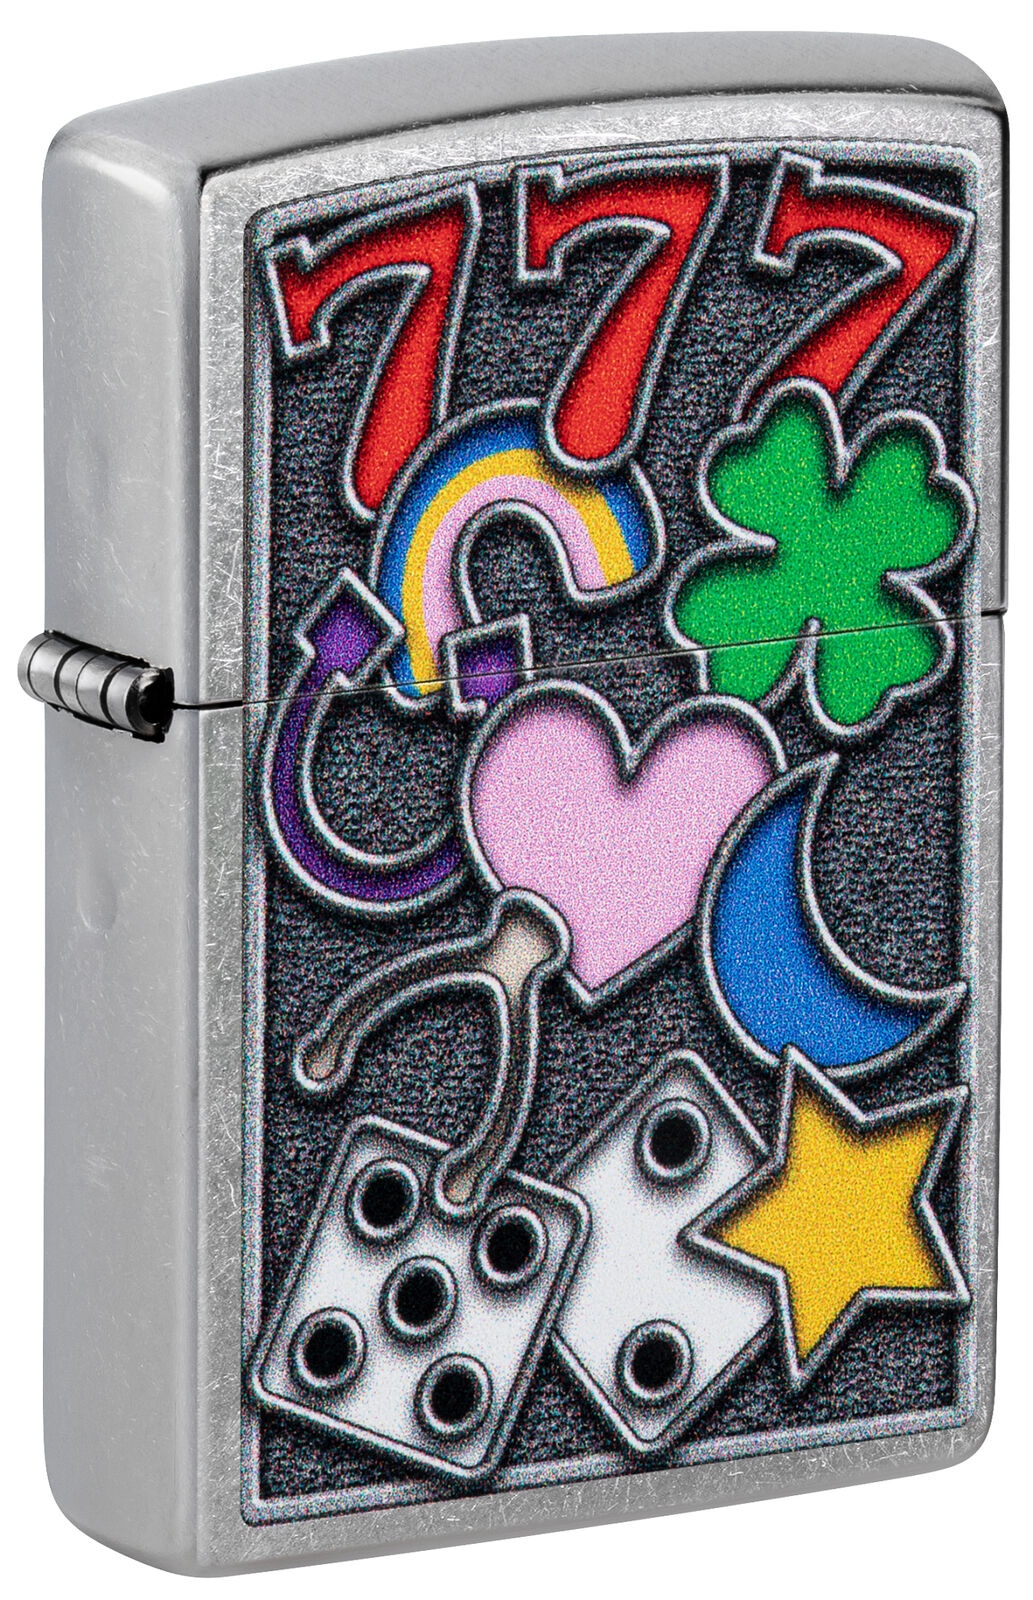 Zippo All Luck Design Street Chrome Windproof Lighter, 48682